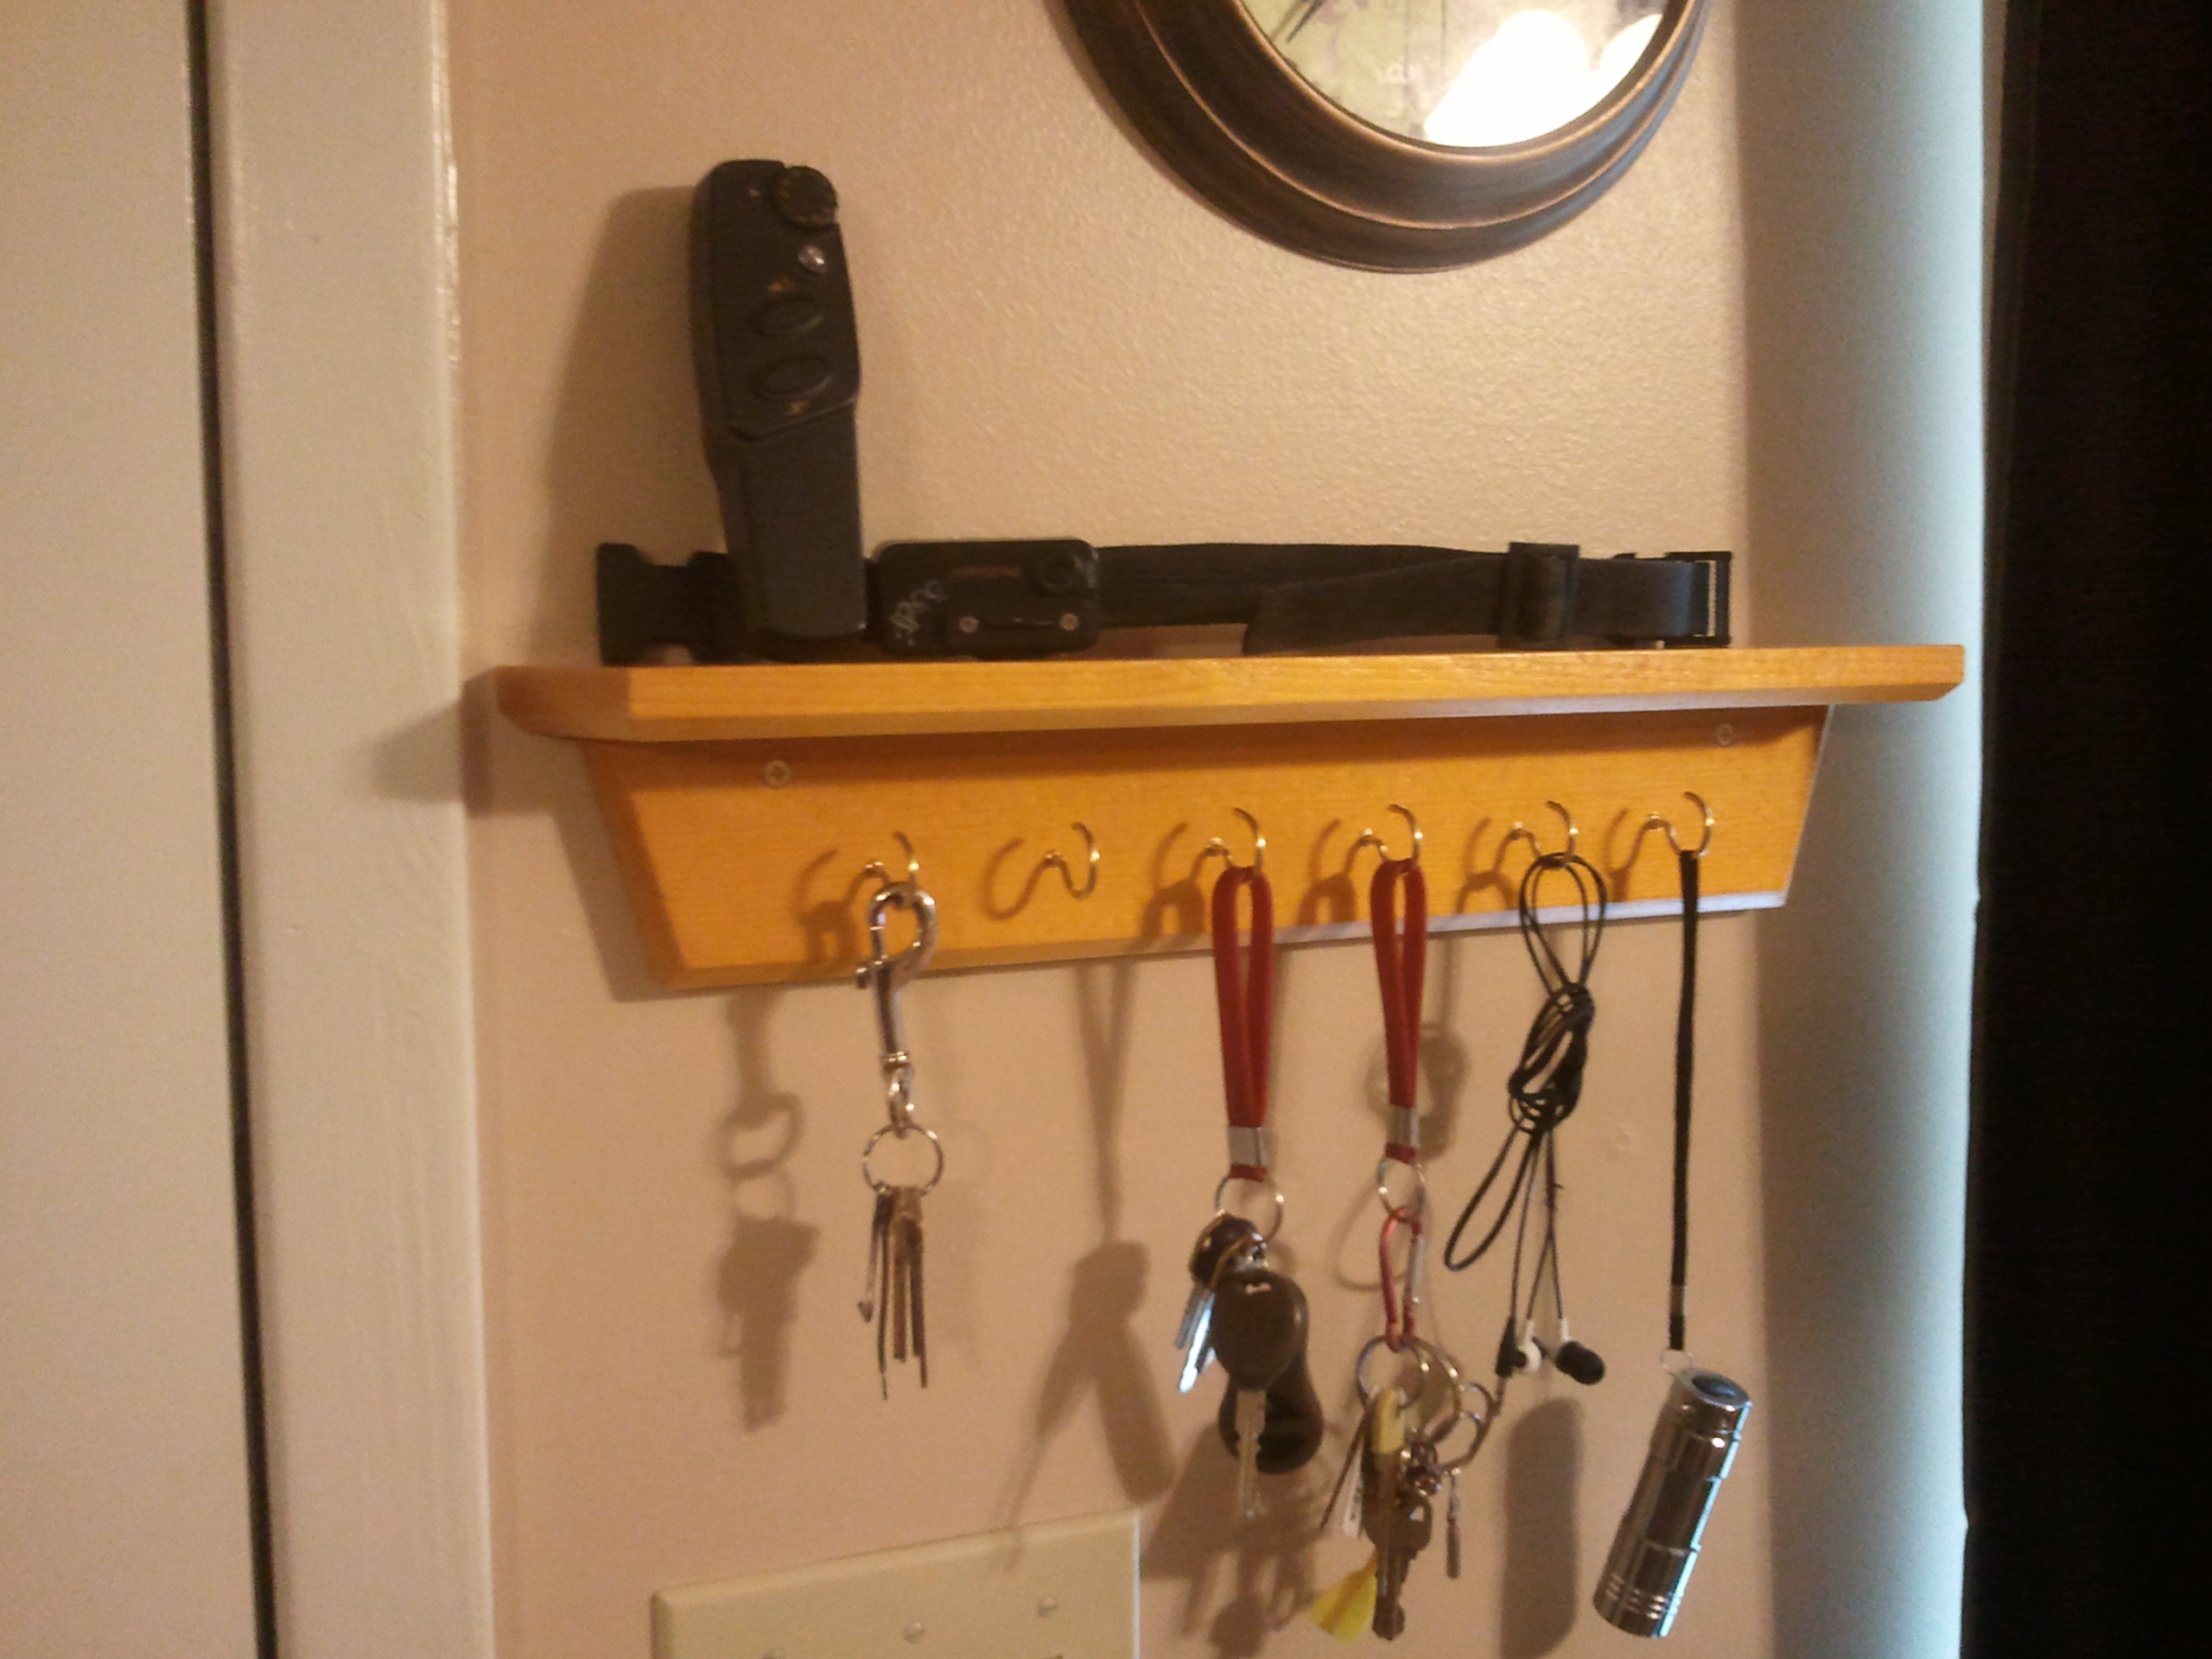 Key holder shelves